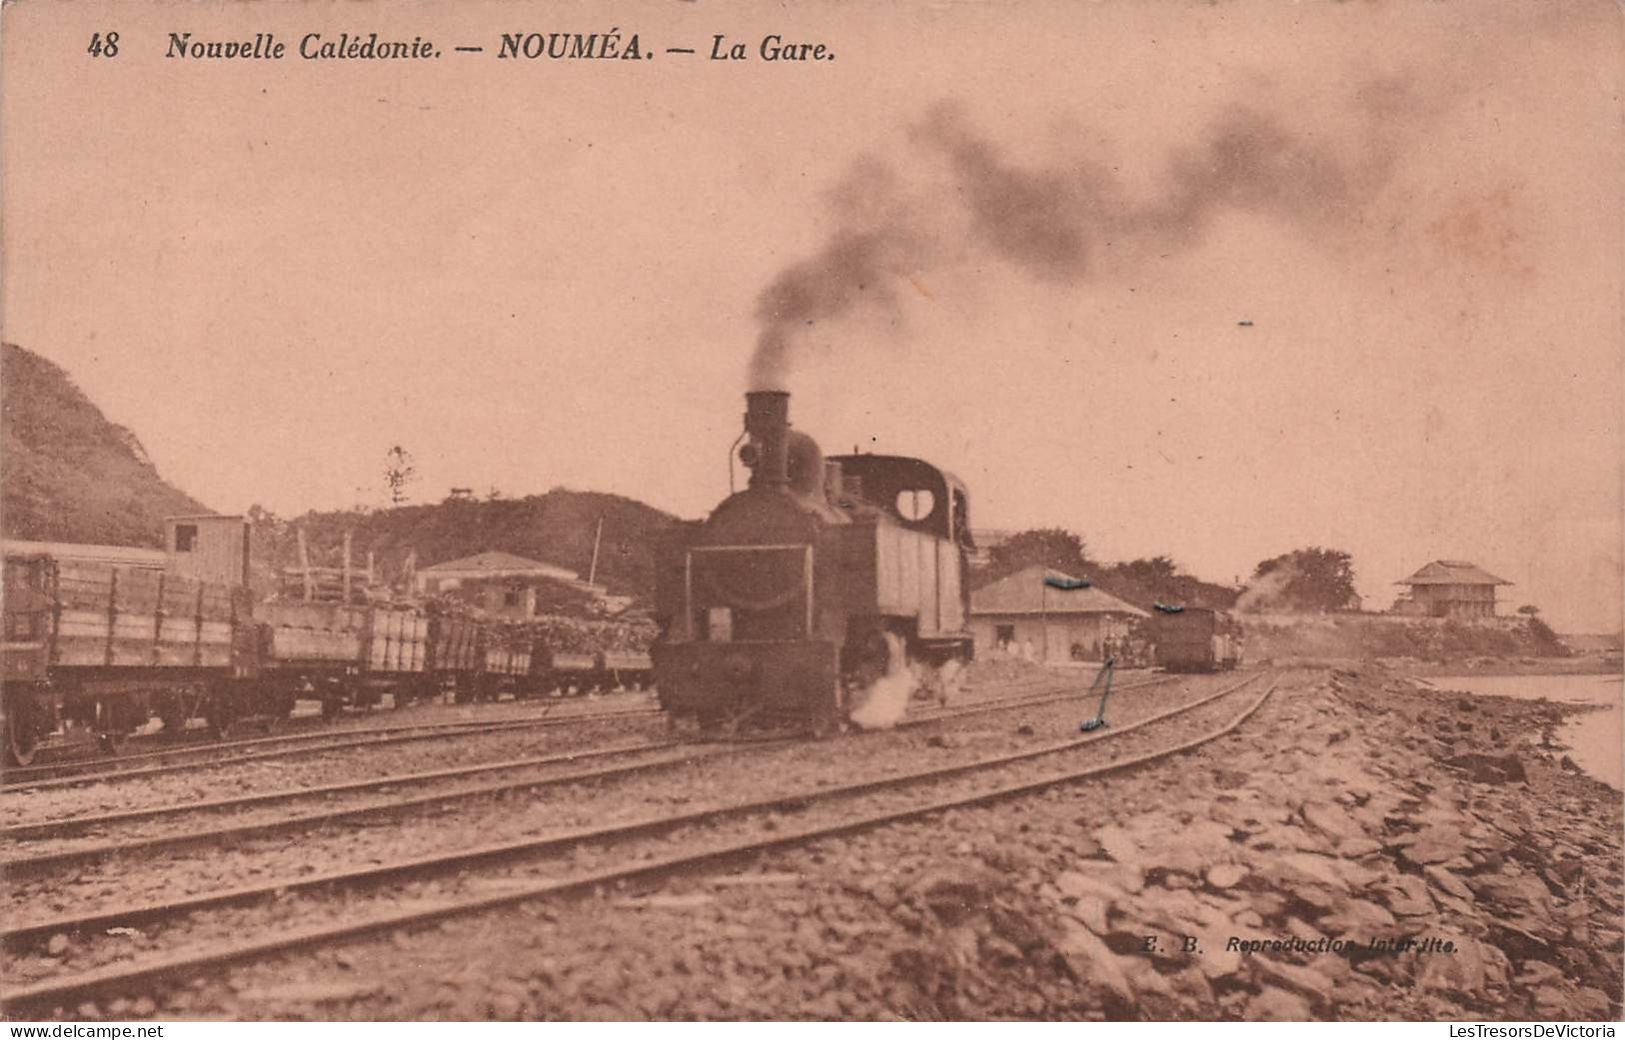 Nouvelle Calédonie - Noumea - La Gare - Train En Gare - Locomotive - Chemin De Fer - Carte Postale Ancienne - New Caledonia